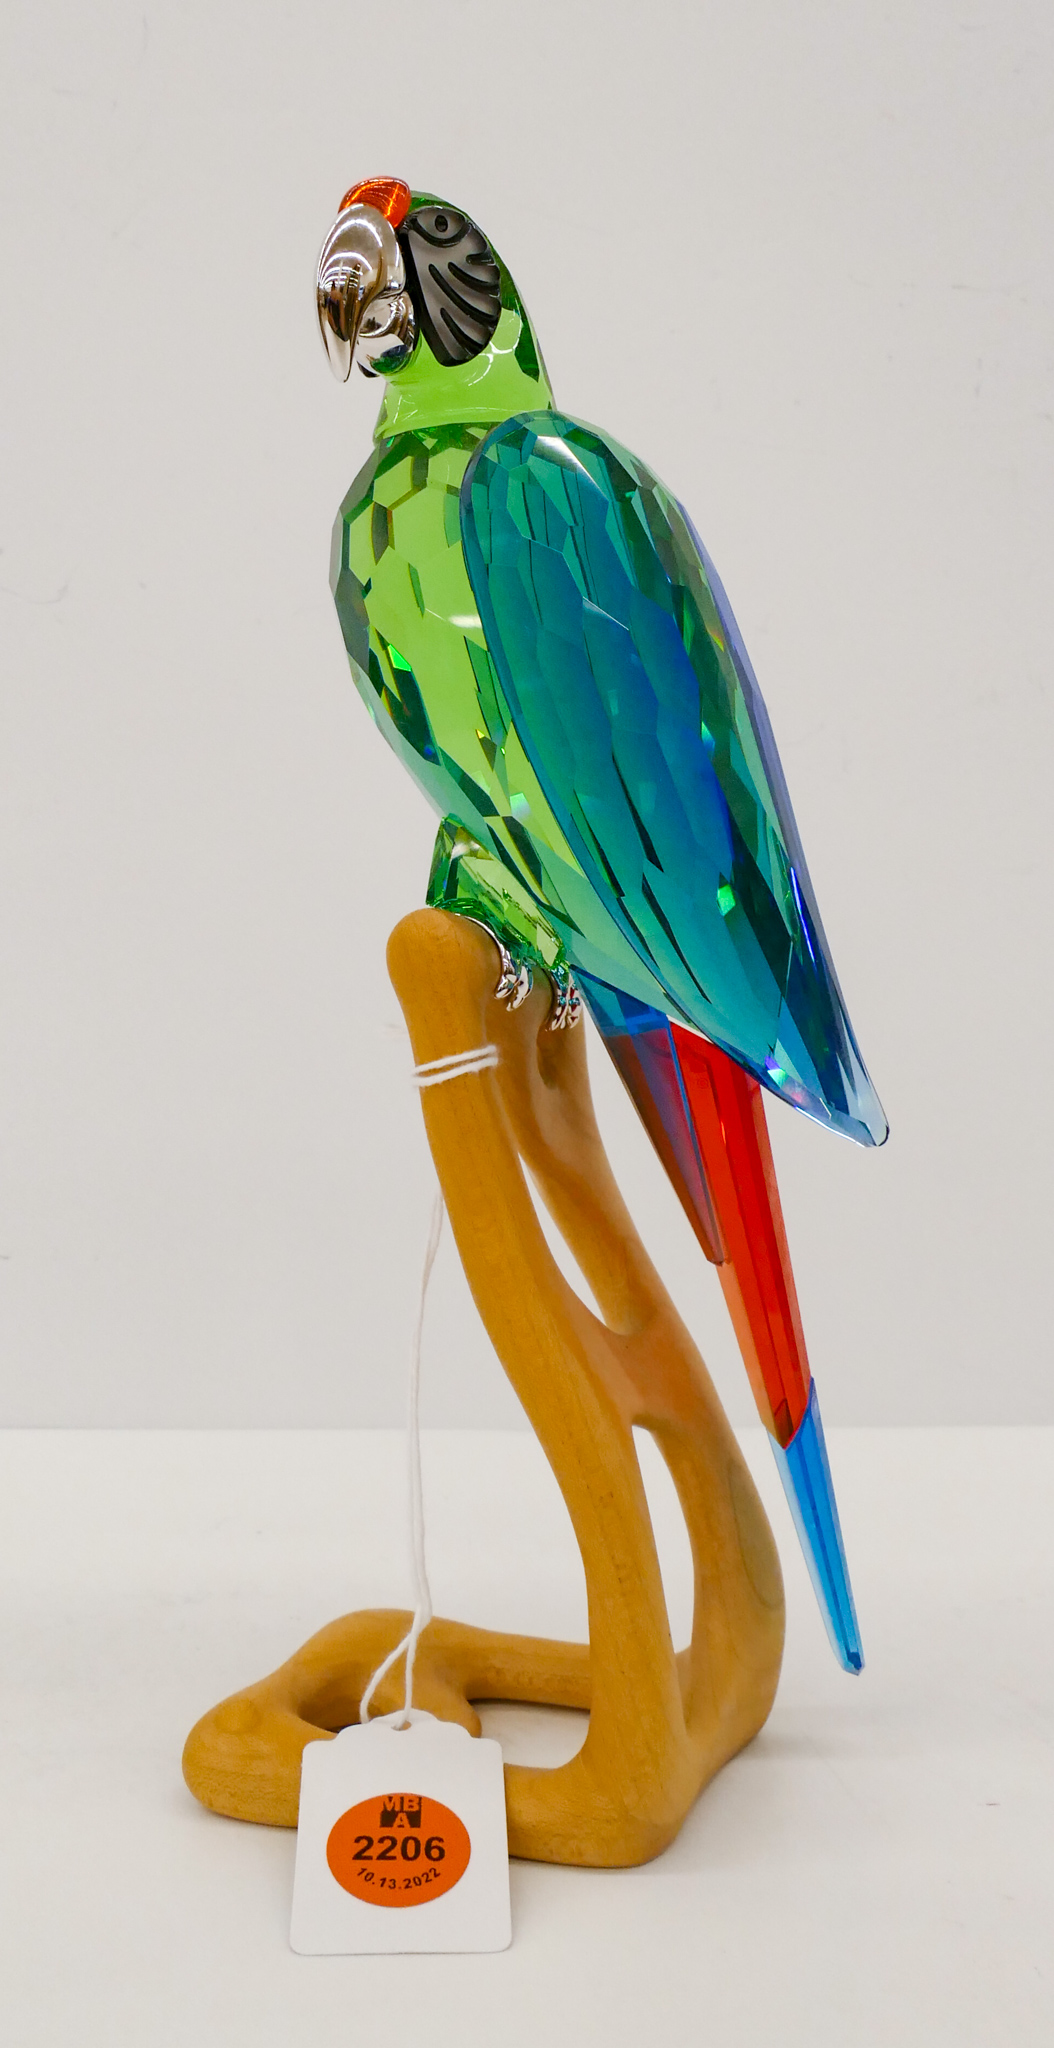 Swarovski Macaw Large Crystal Bird